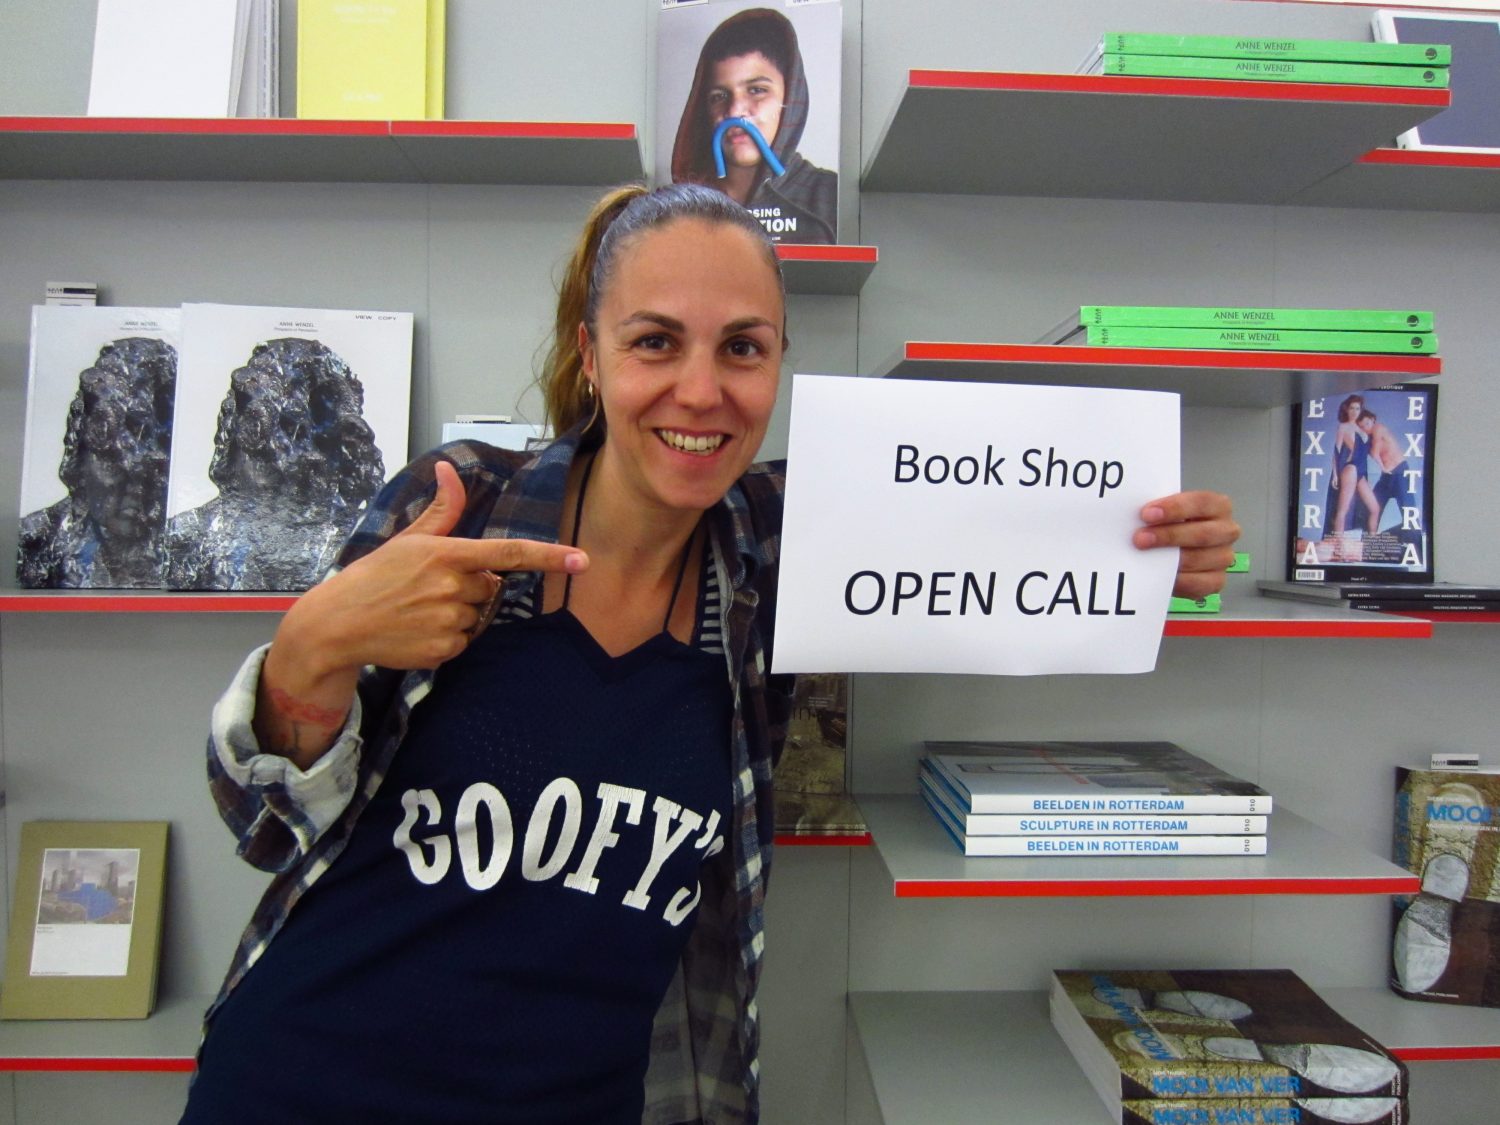 Book Shop OPEN CALL